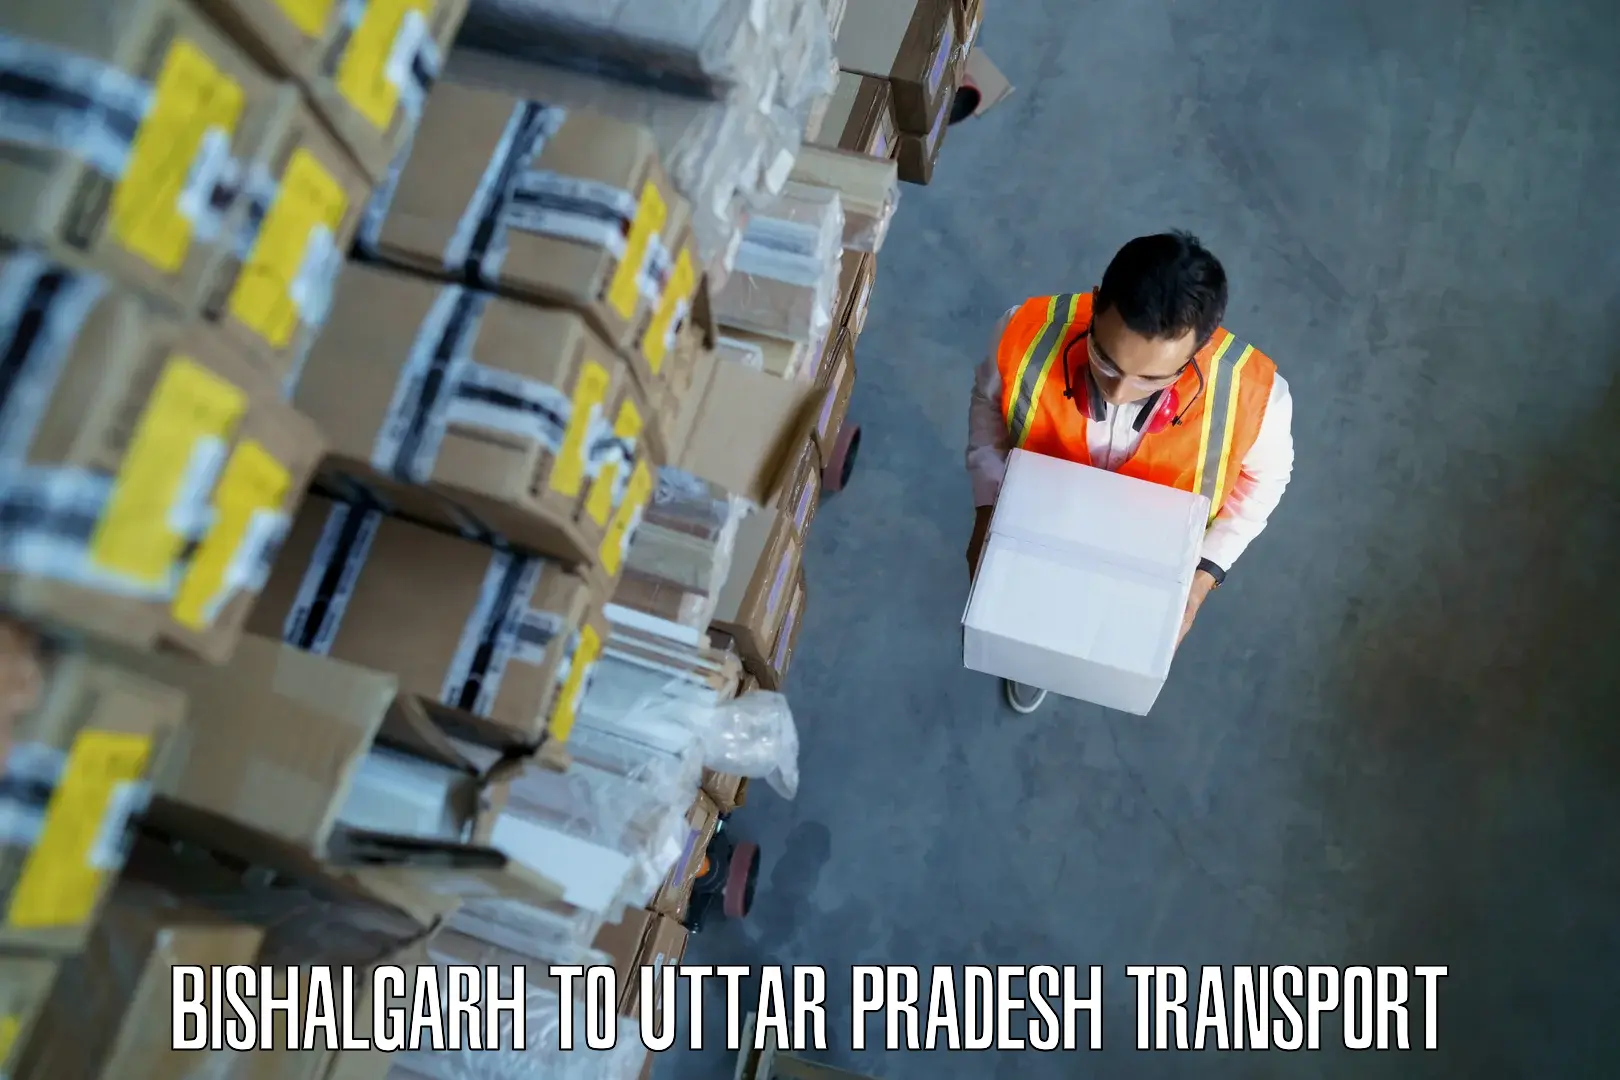 Daily transport service Bishalgarh to Dullahpur